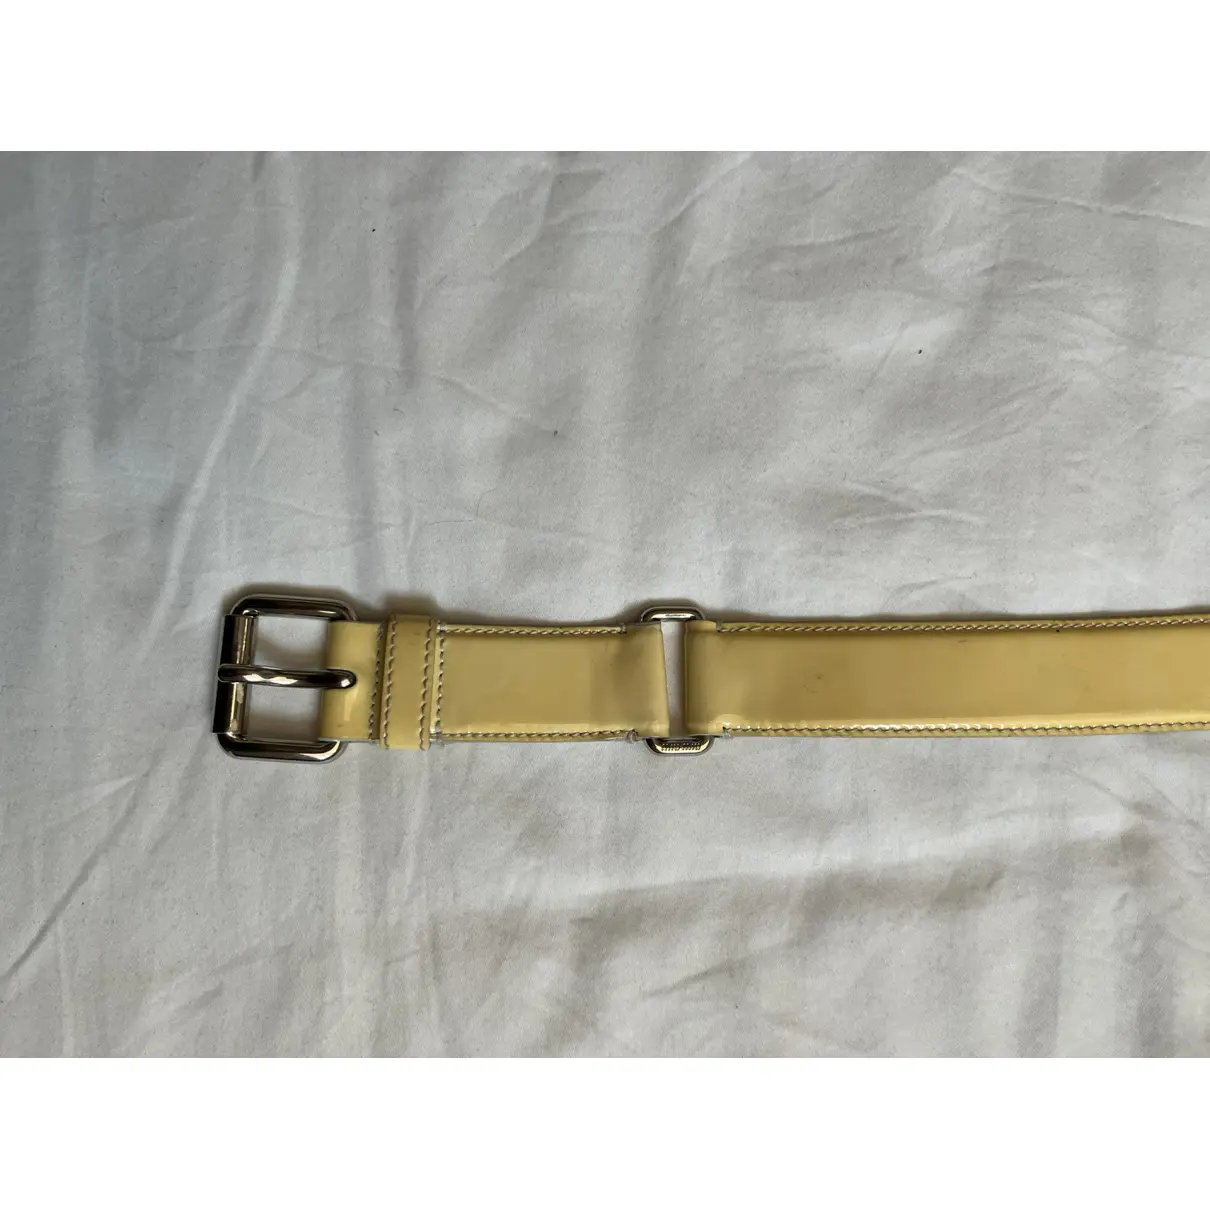 Patent leather belt Miu Miu